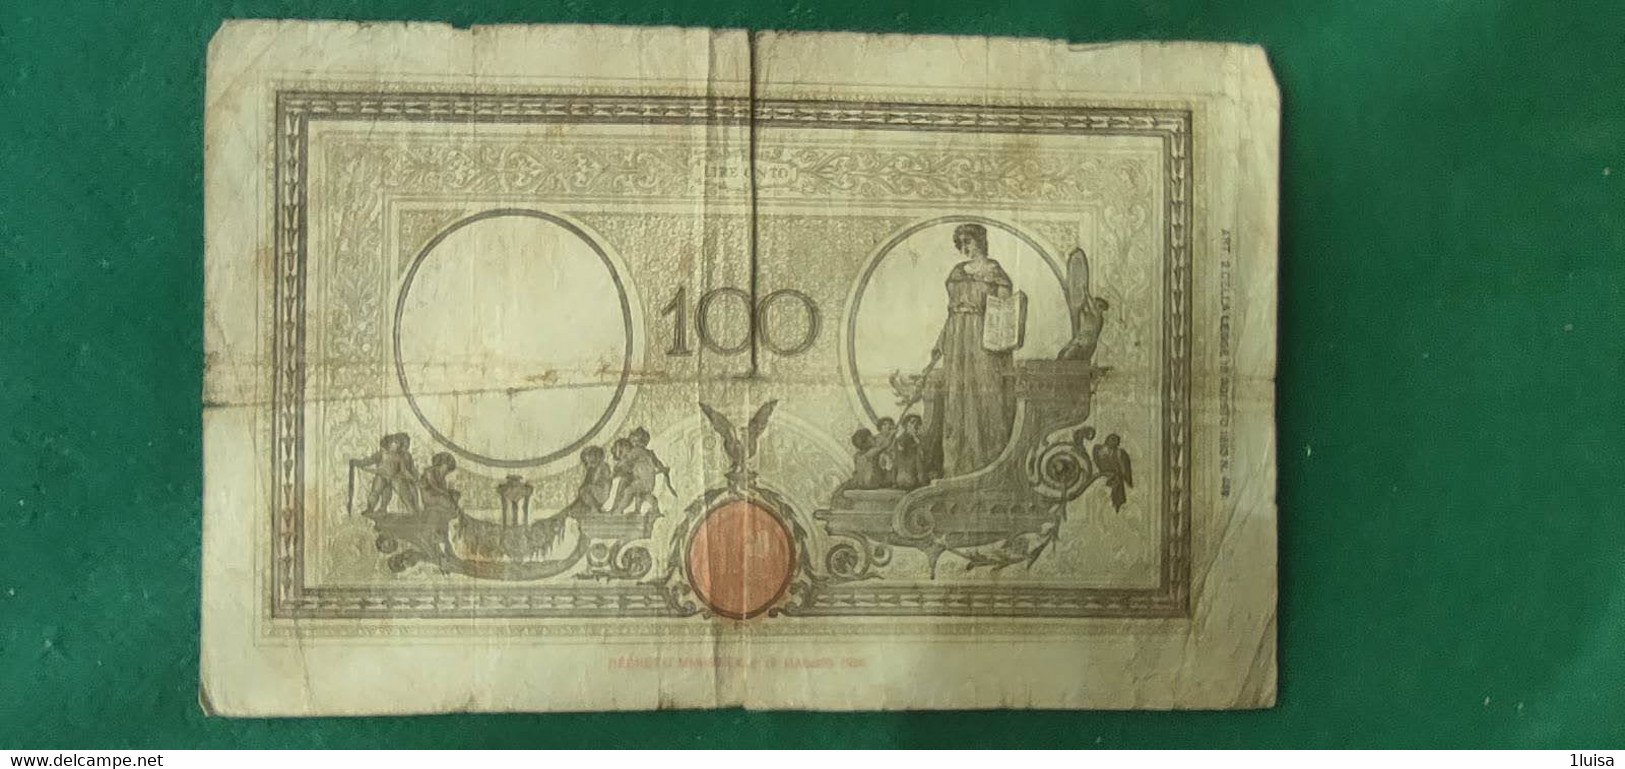 Italia 100 Lire 9/12/1942 - 100 Liras